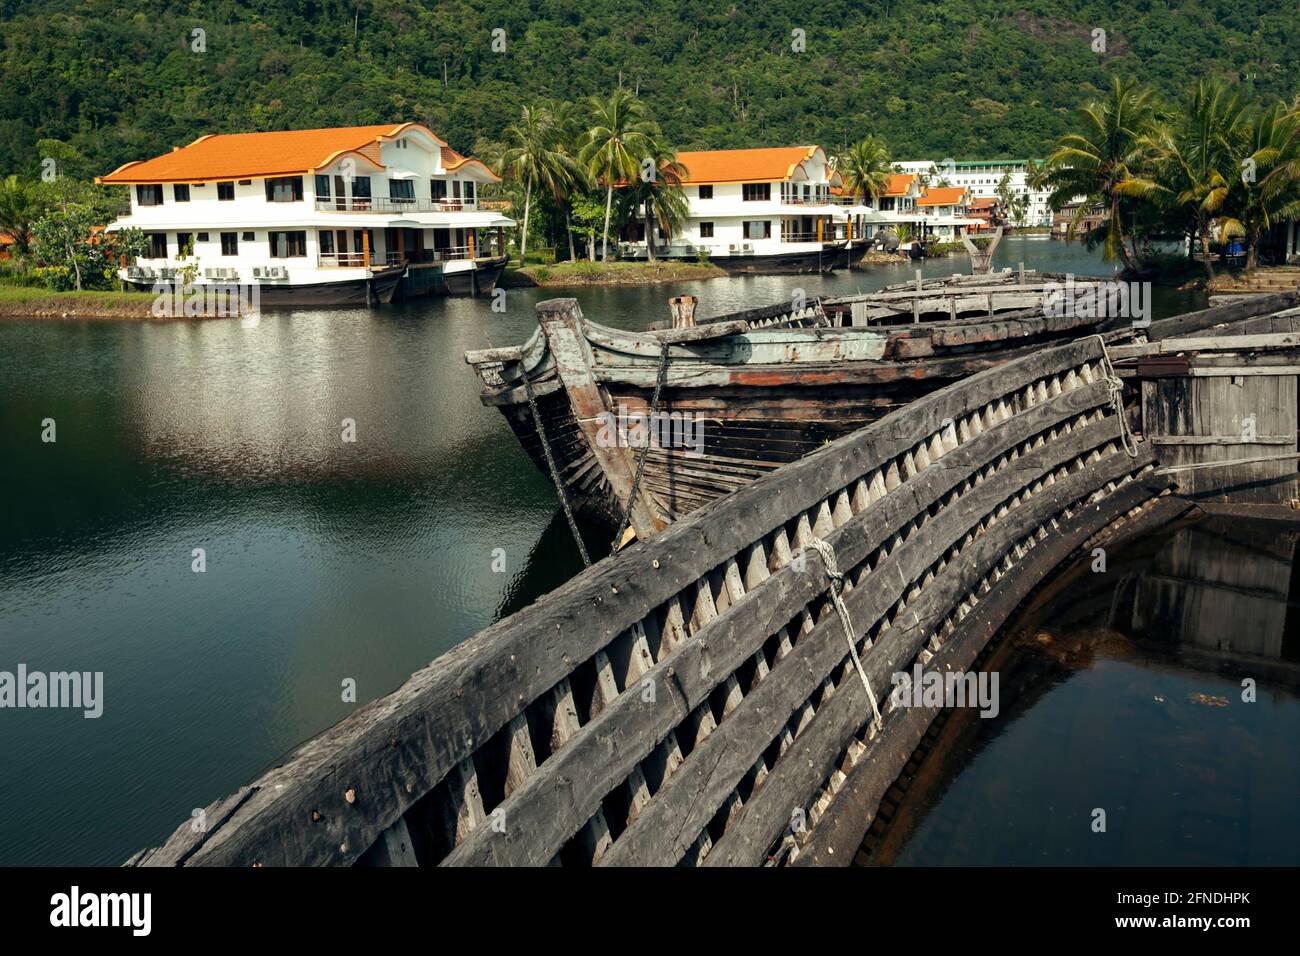 Un lac avec de vieux bateaux de mer abandonnés dans la jungle de la Thaïlande. Banque D'Images